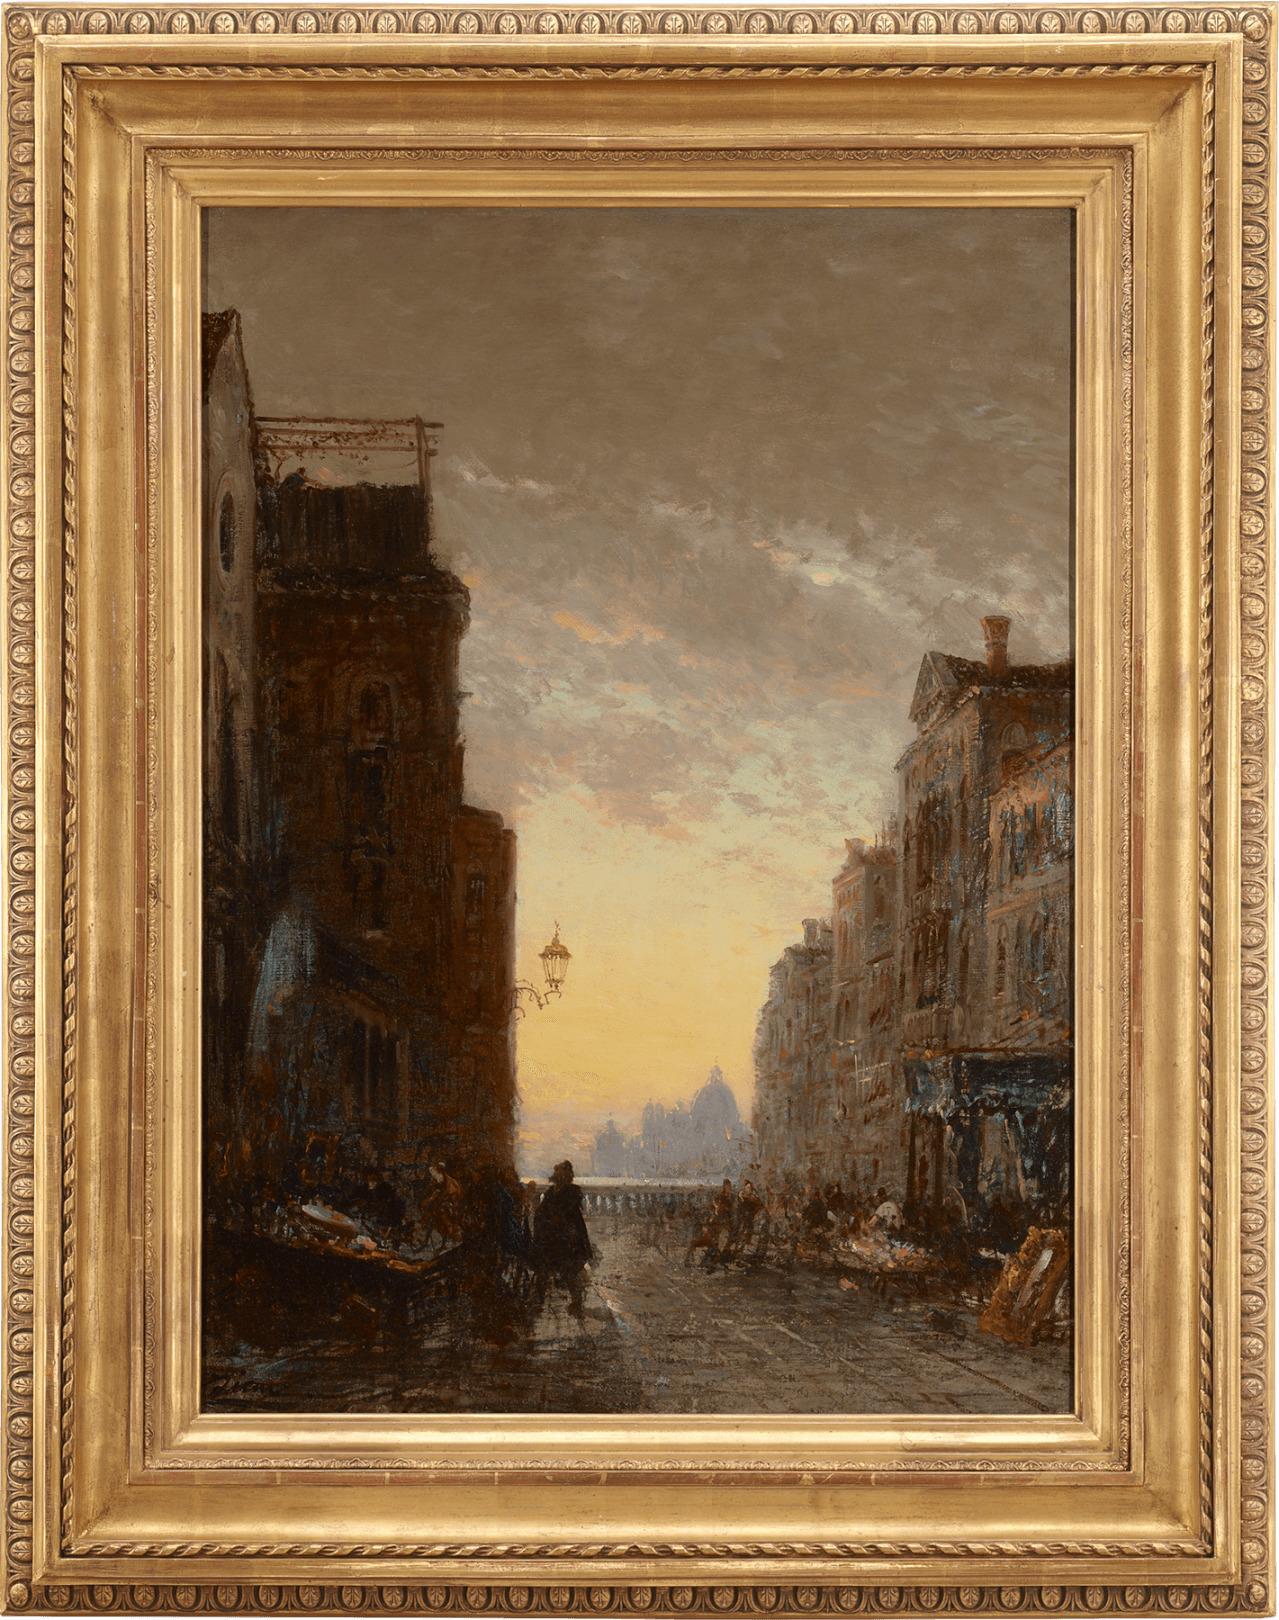 Market Place, Venise - Painting by Felix Ziem